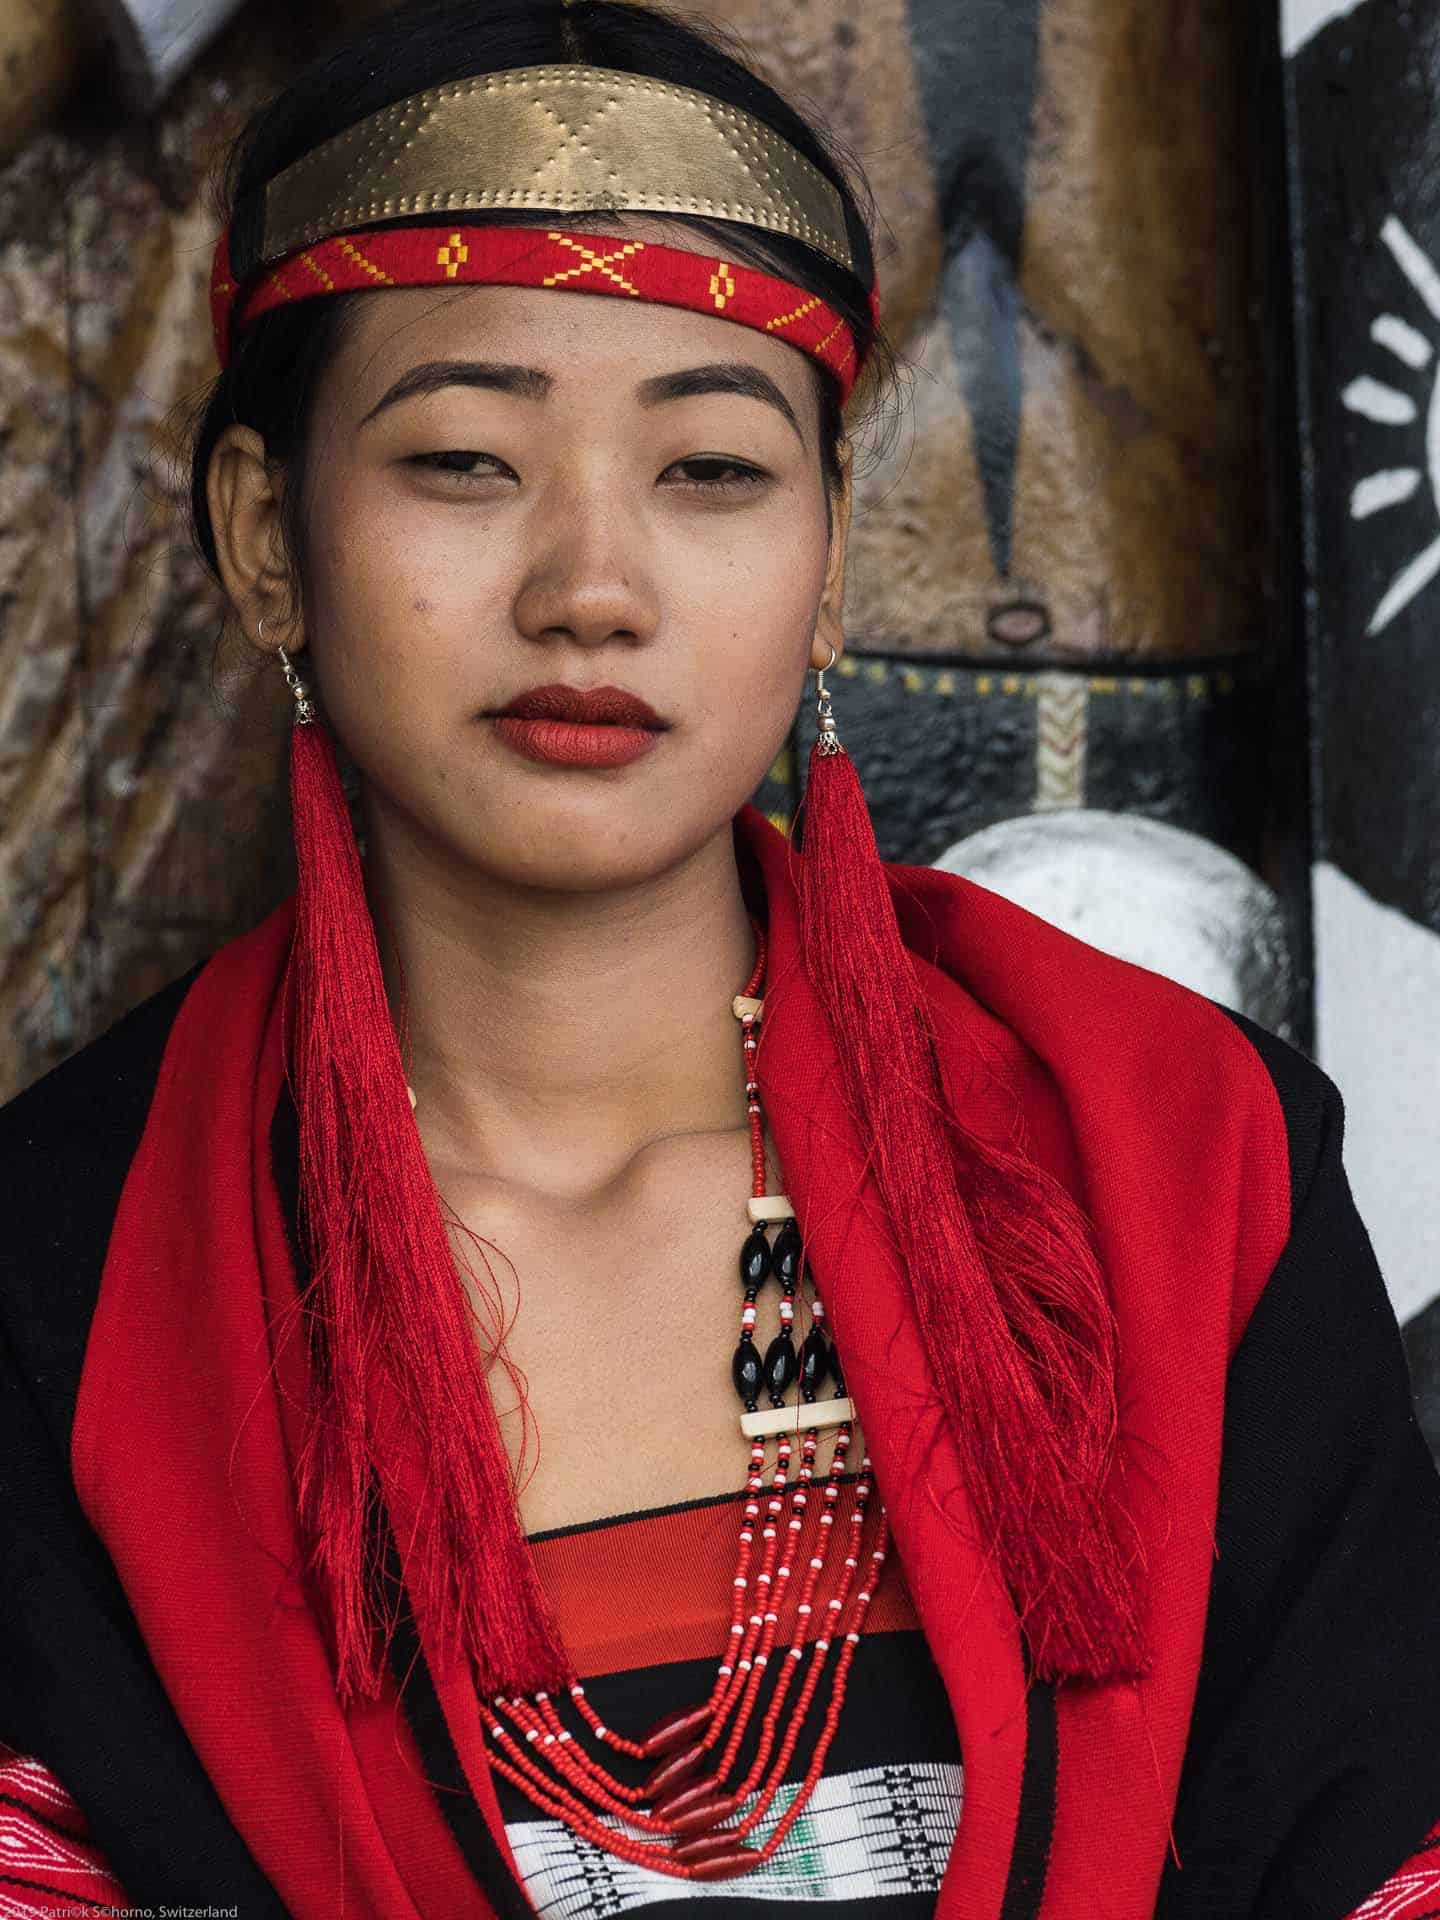 Bamboo Retreat Hotel - image "Nagaland - Reisebericht von Teeplantagen und dem Hornbill Festival - Informationen für die Indien Reise" 314